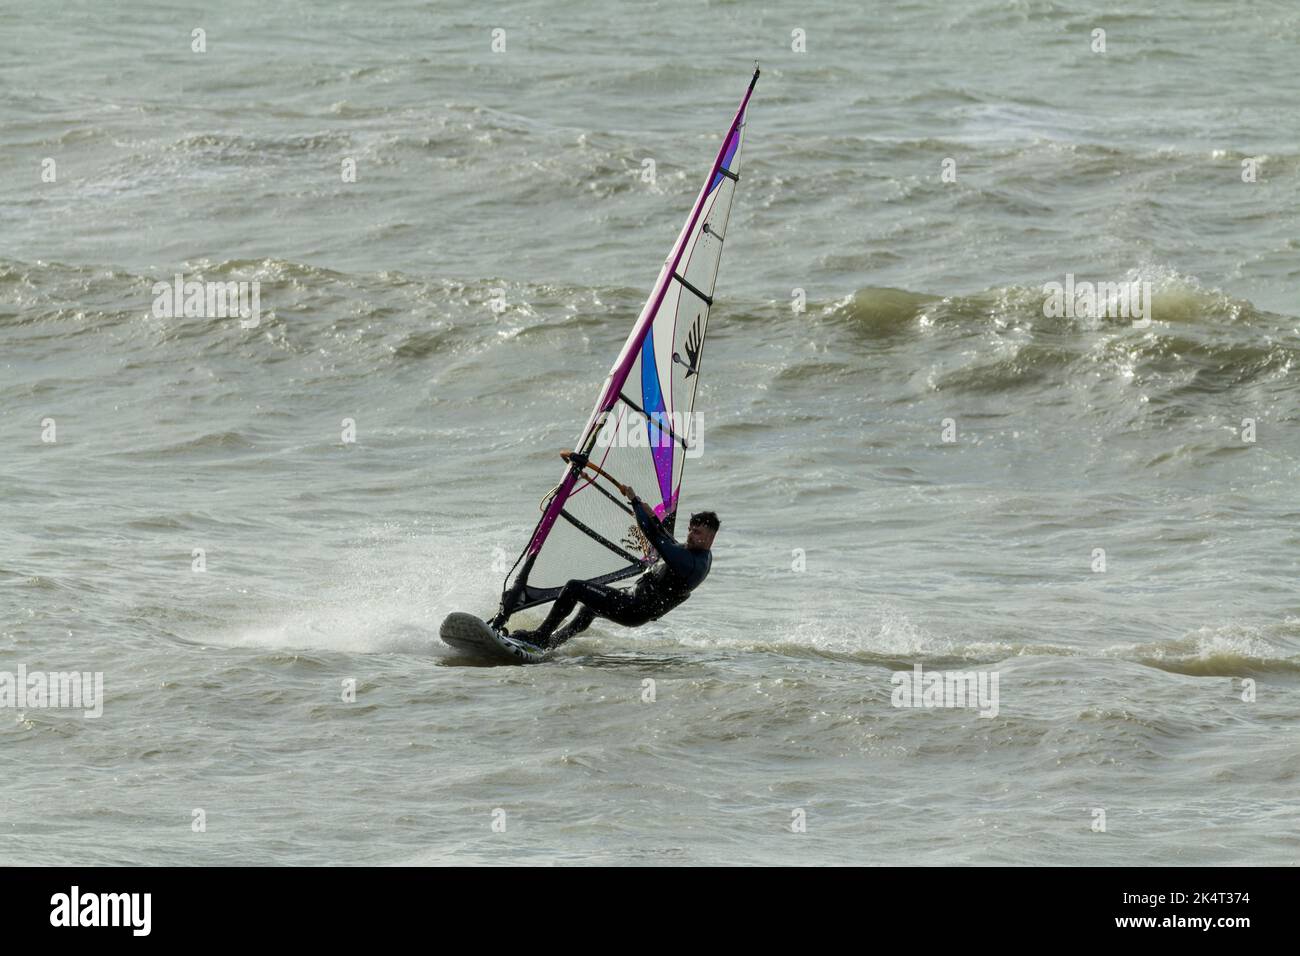 Sport acquatici windsurf in mare con vela per catturare il vento per spingere la tavola e il surfista vela è inclinato e girato per sterzare e catturare il vento Foto Stock